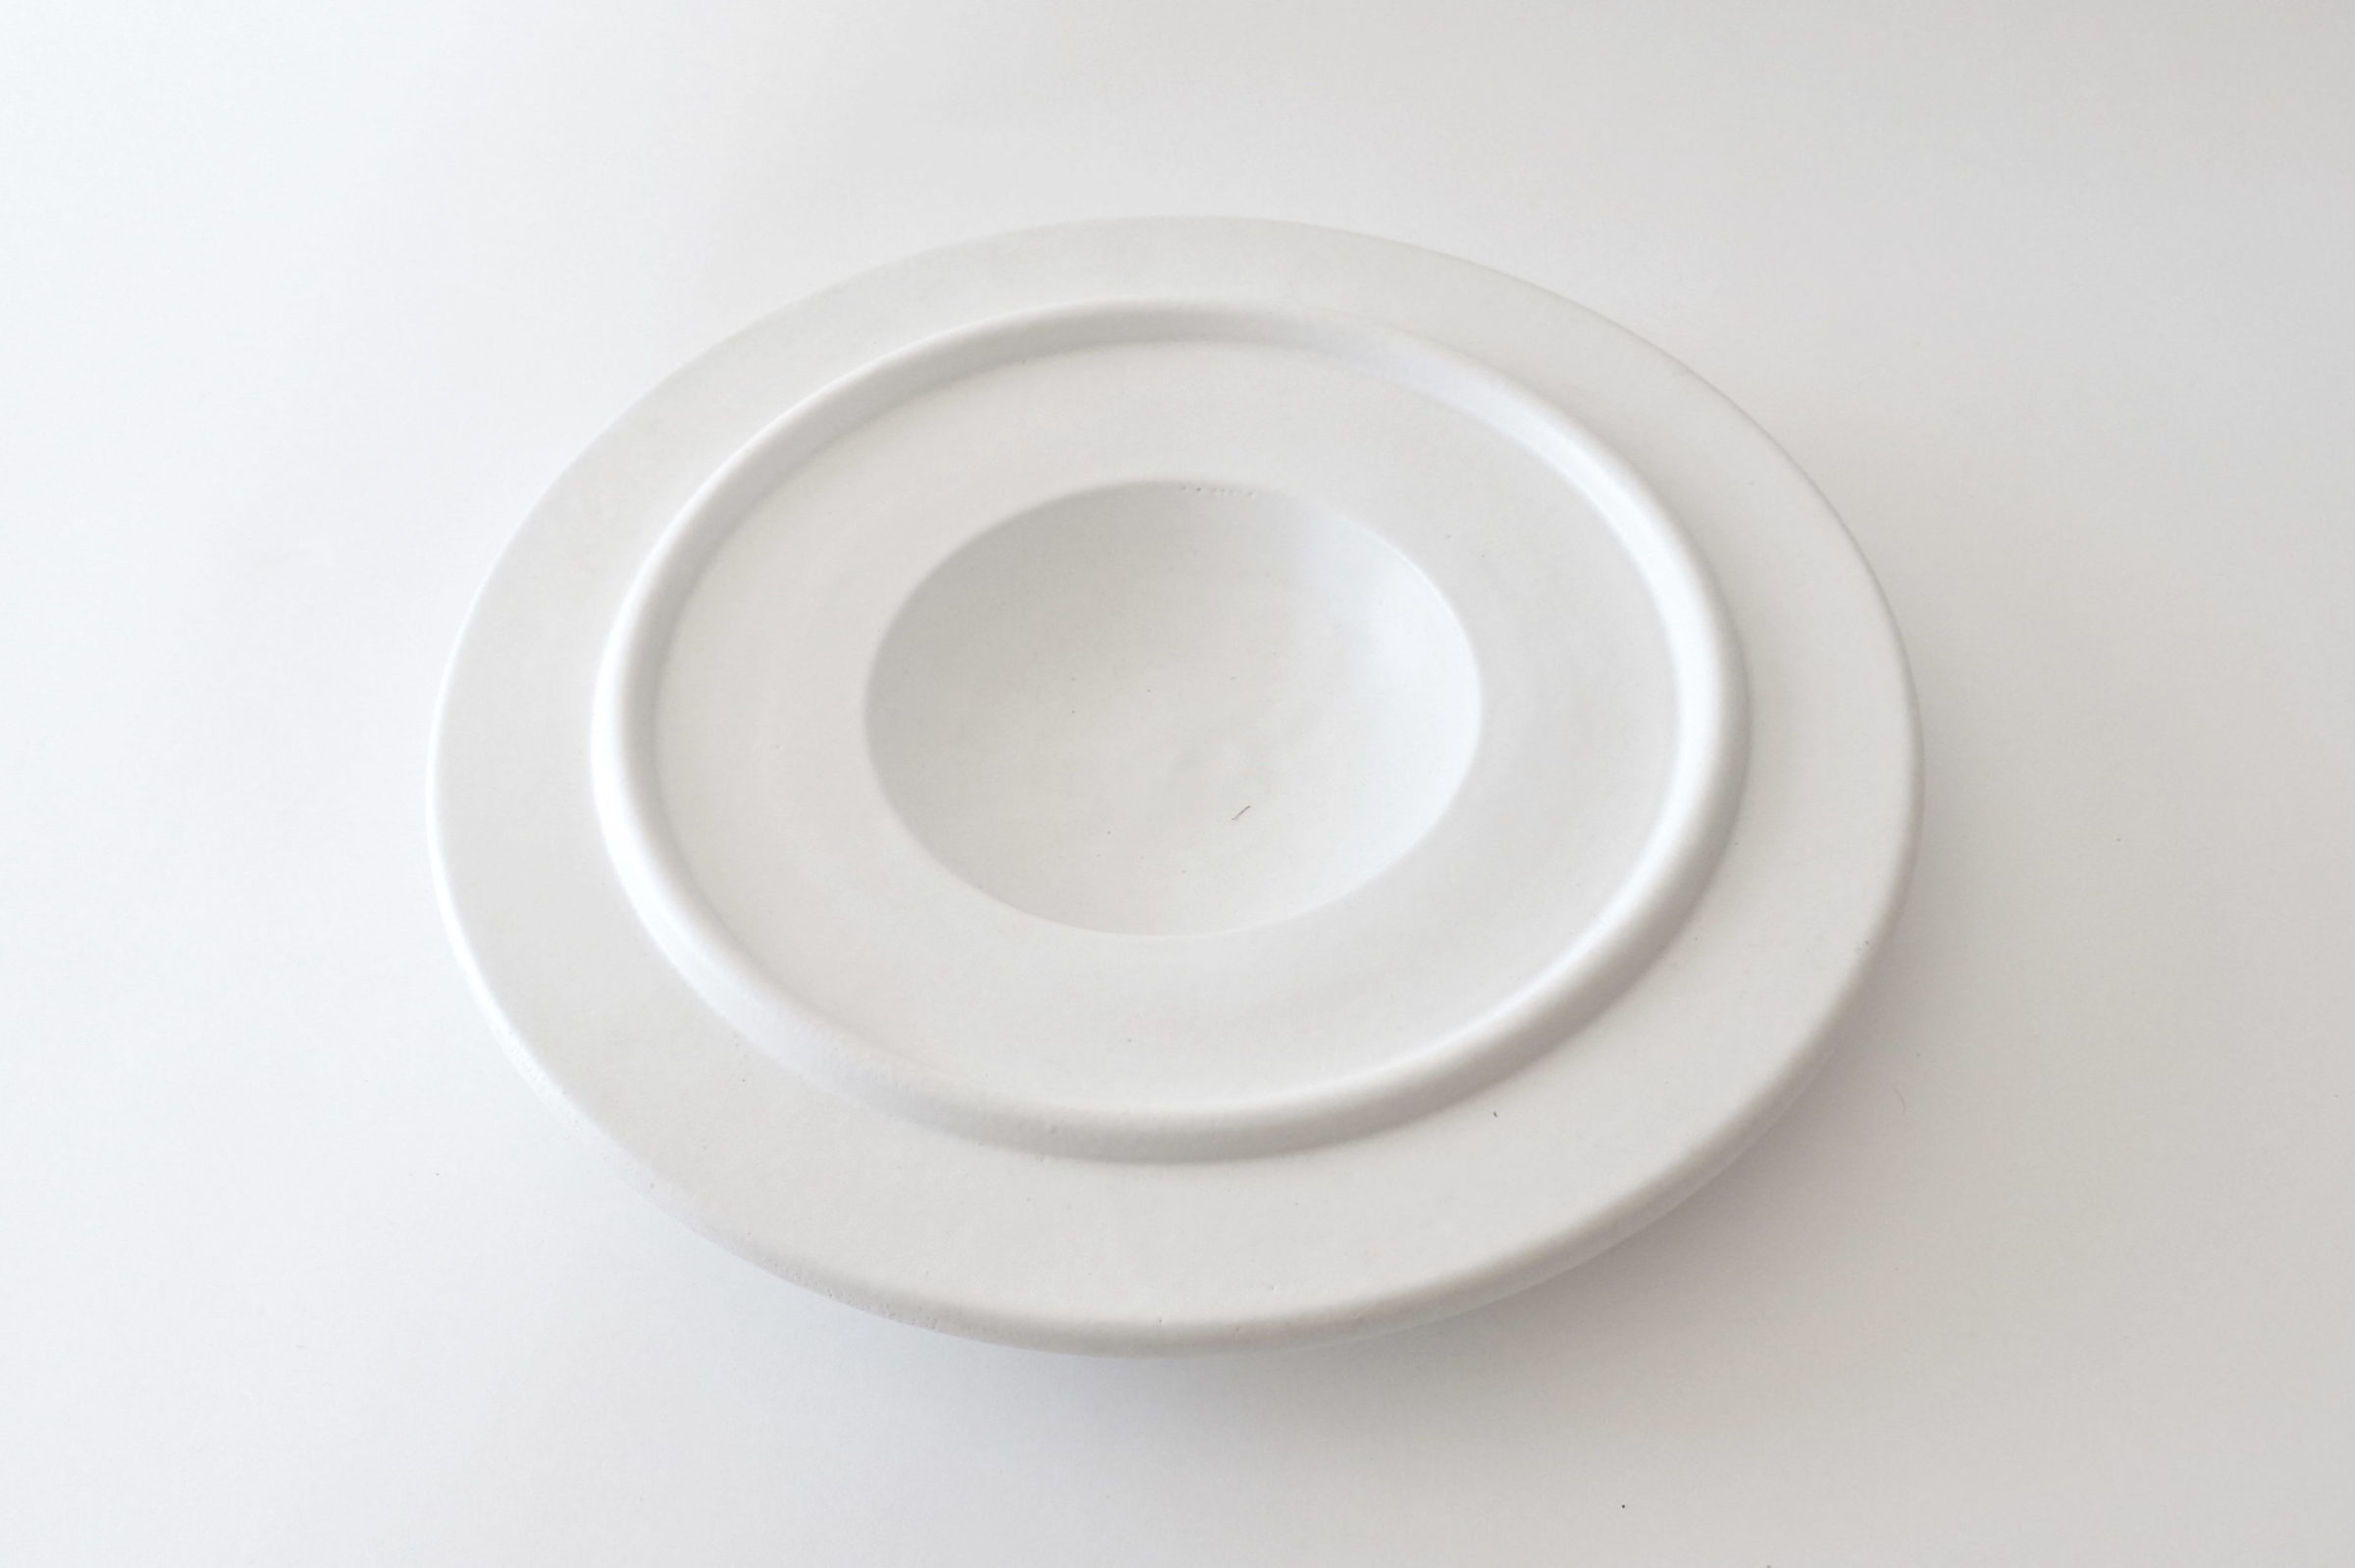 Centro tavola in ceramica bianca - Ettore Sottsass per ceramiche Bitossi